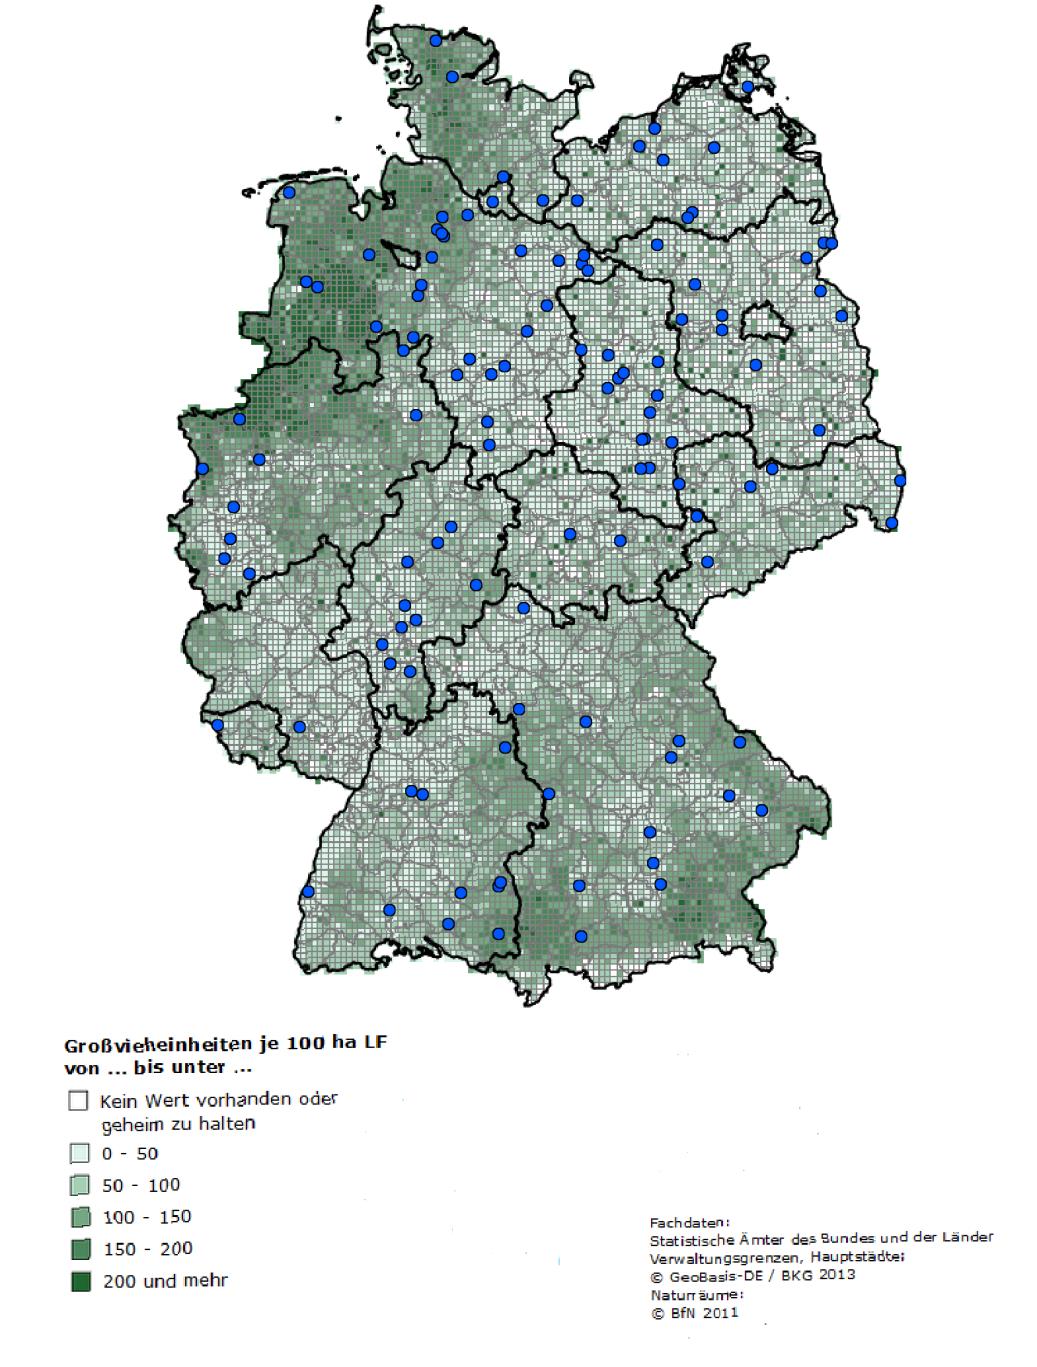 Abbildung 0-2: Großvieheinheiten je 100 ha landwirtschaftlich genutzter Fläche (Grüne Farbgebeung